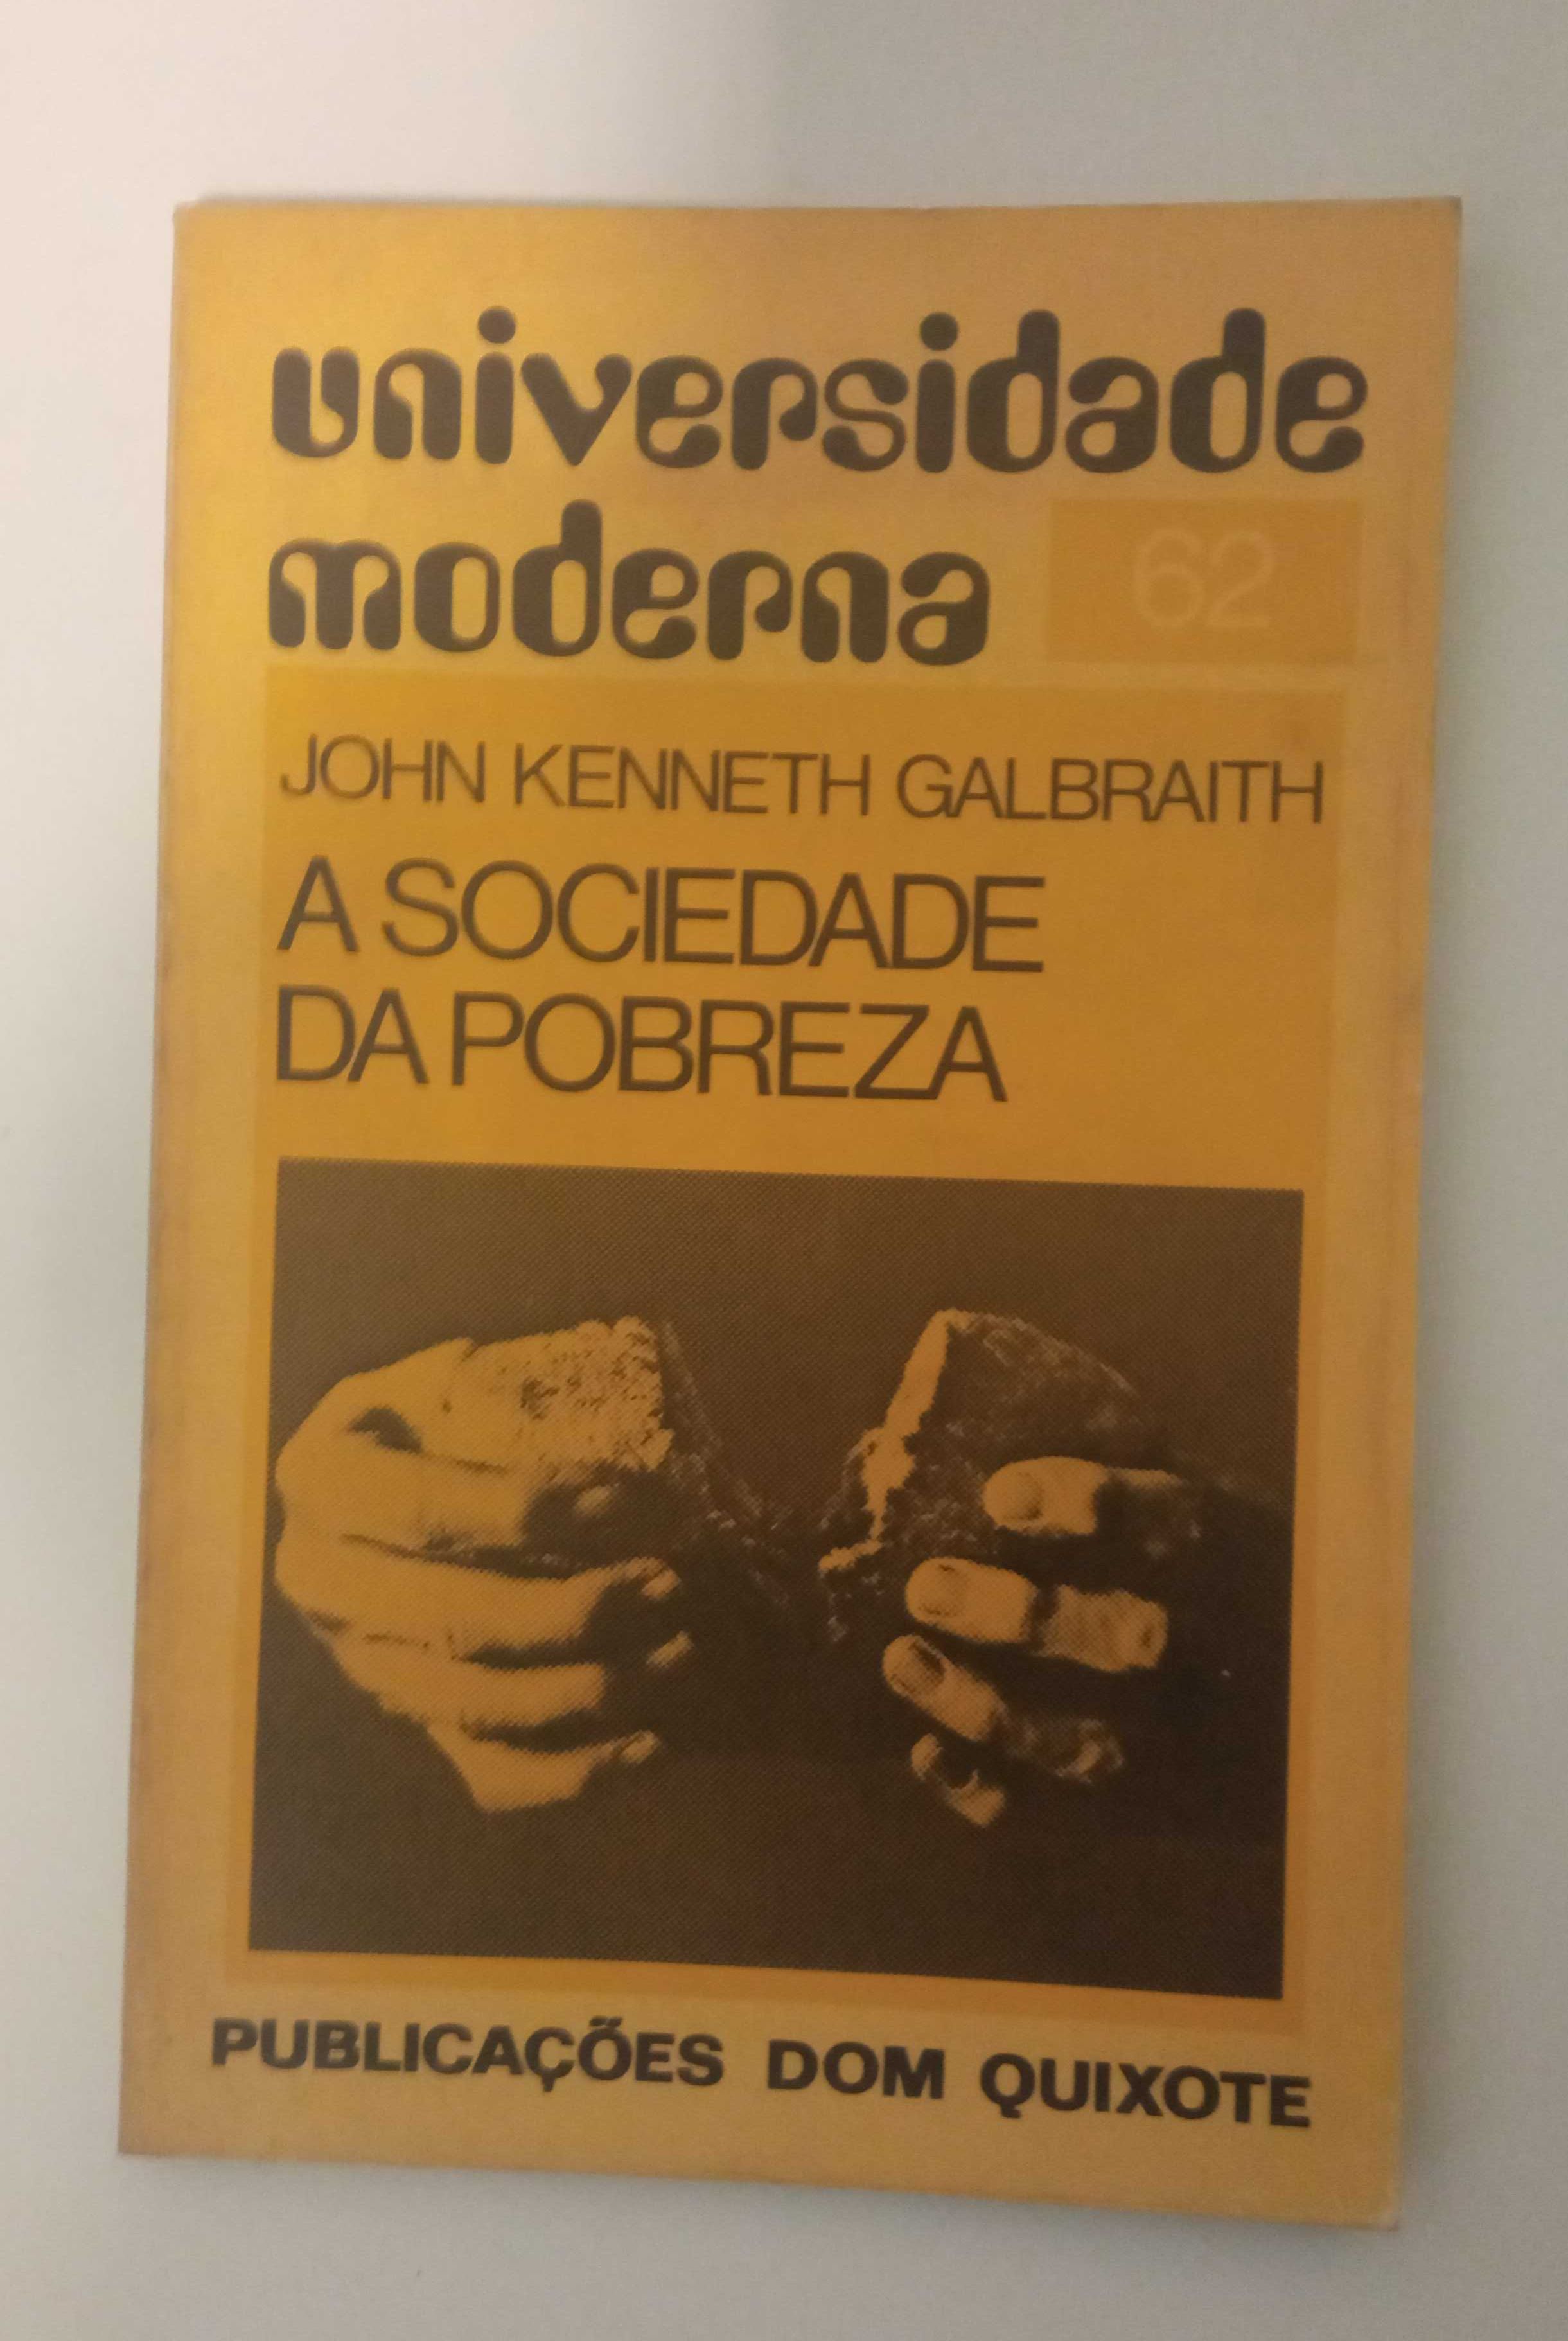 Diversos: A Sociedade da Pobreza, de John Kenneth Galbraith